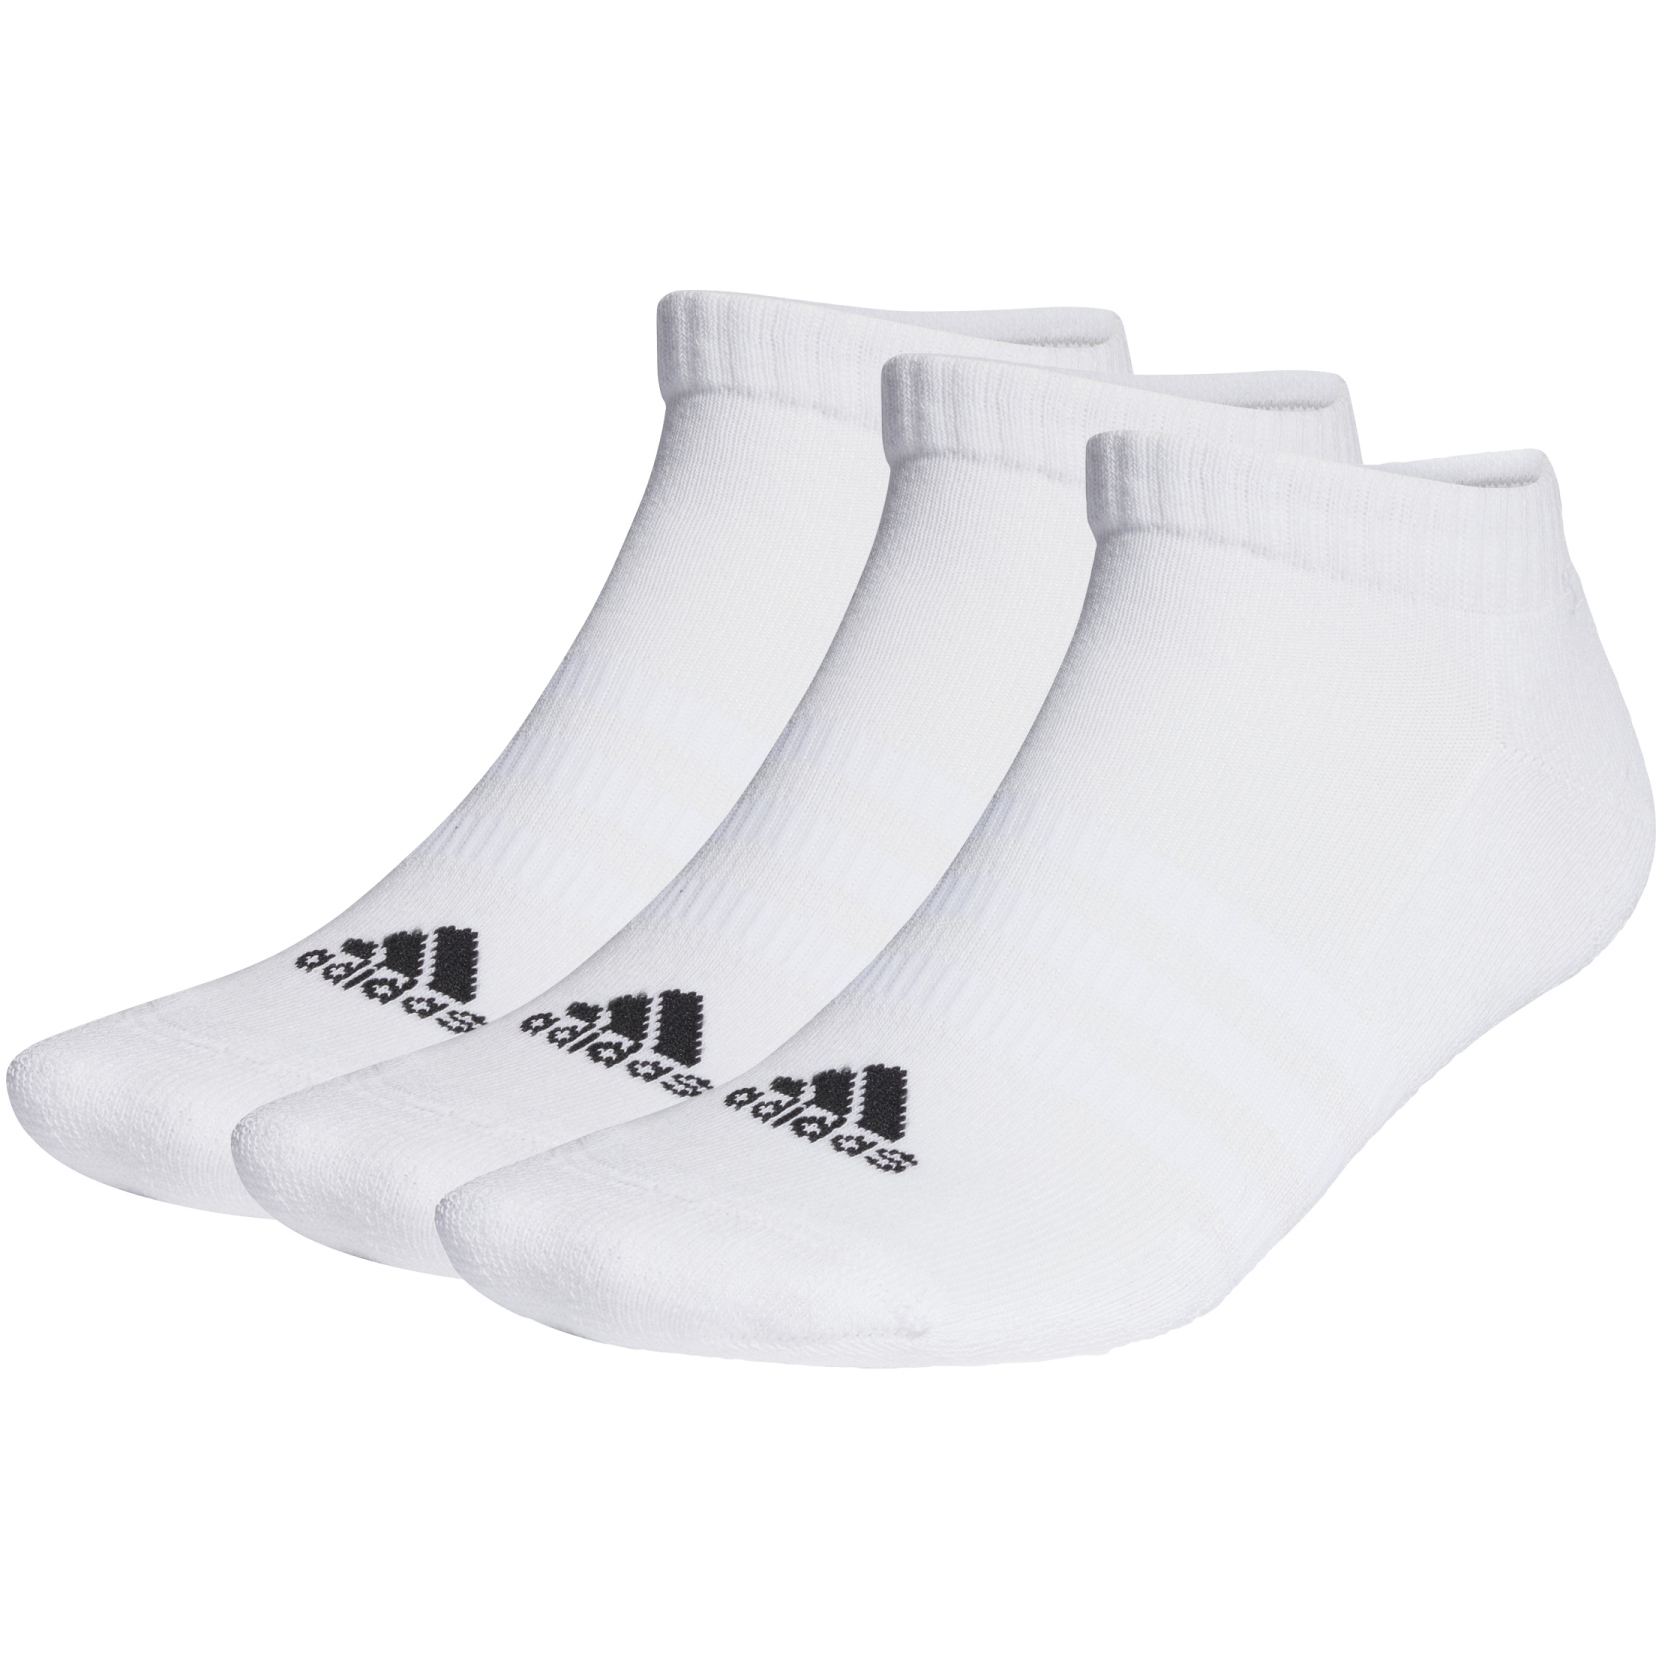 Produktbild von adidas Cushioned Crew Socken - 3 Paar - weiß/schwarz HT3434